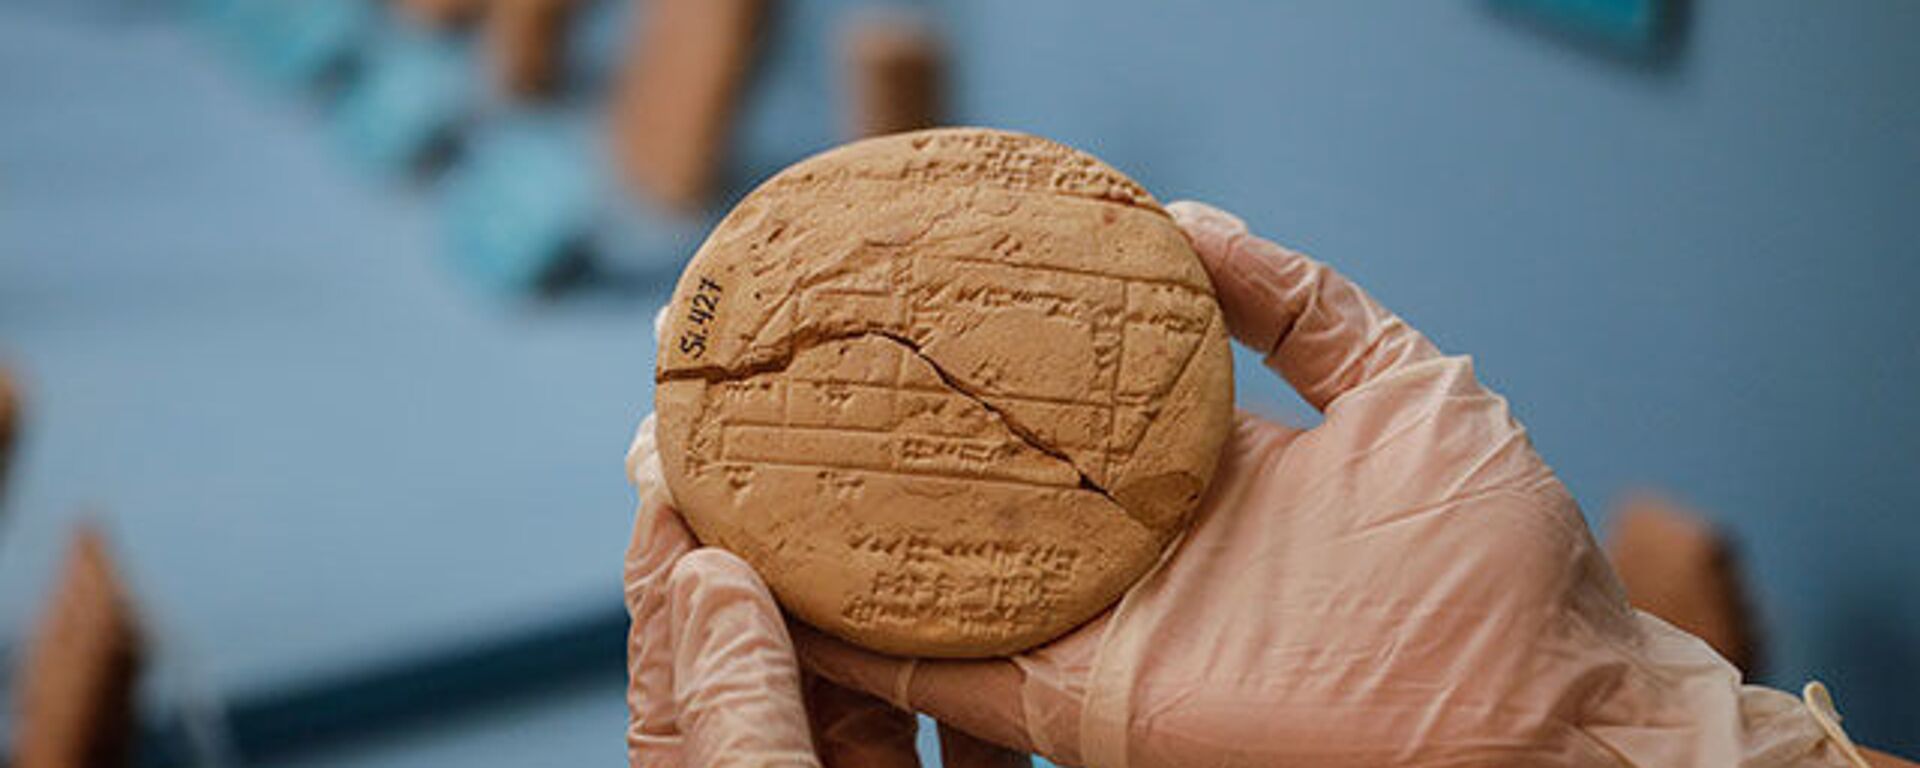 İstanbul Arkeoloji Müzesi'nde bulunan 3 bin 700 yıllık tabletin üzerinde matematiksel işlemler keşfedildi - Sputnik Türkiye, 1920, 09.08.2021